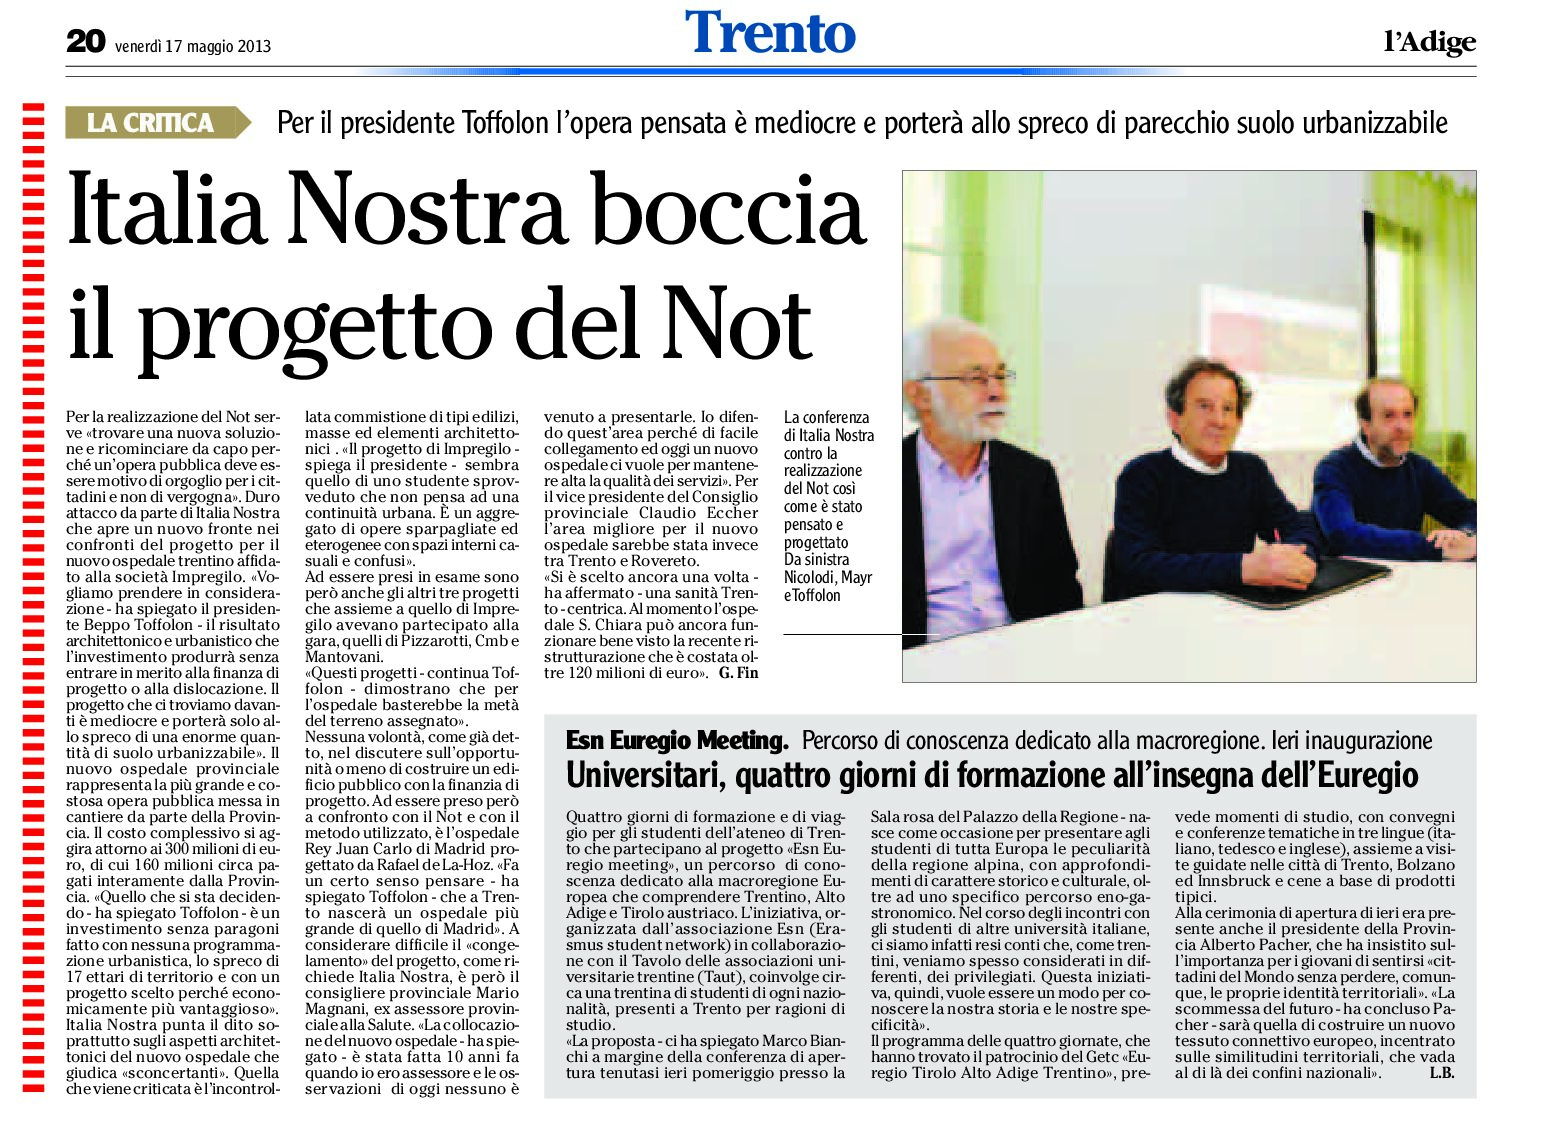 Italia Nostra boccia il progetto del nuovo ospedale di Trento